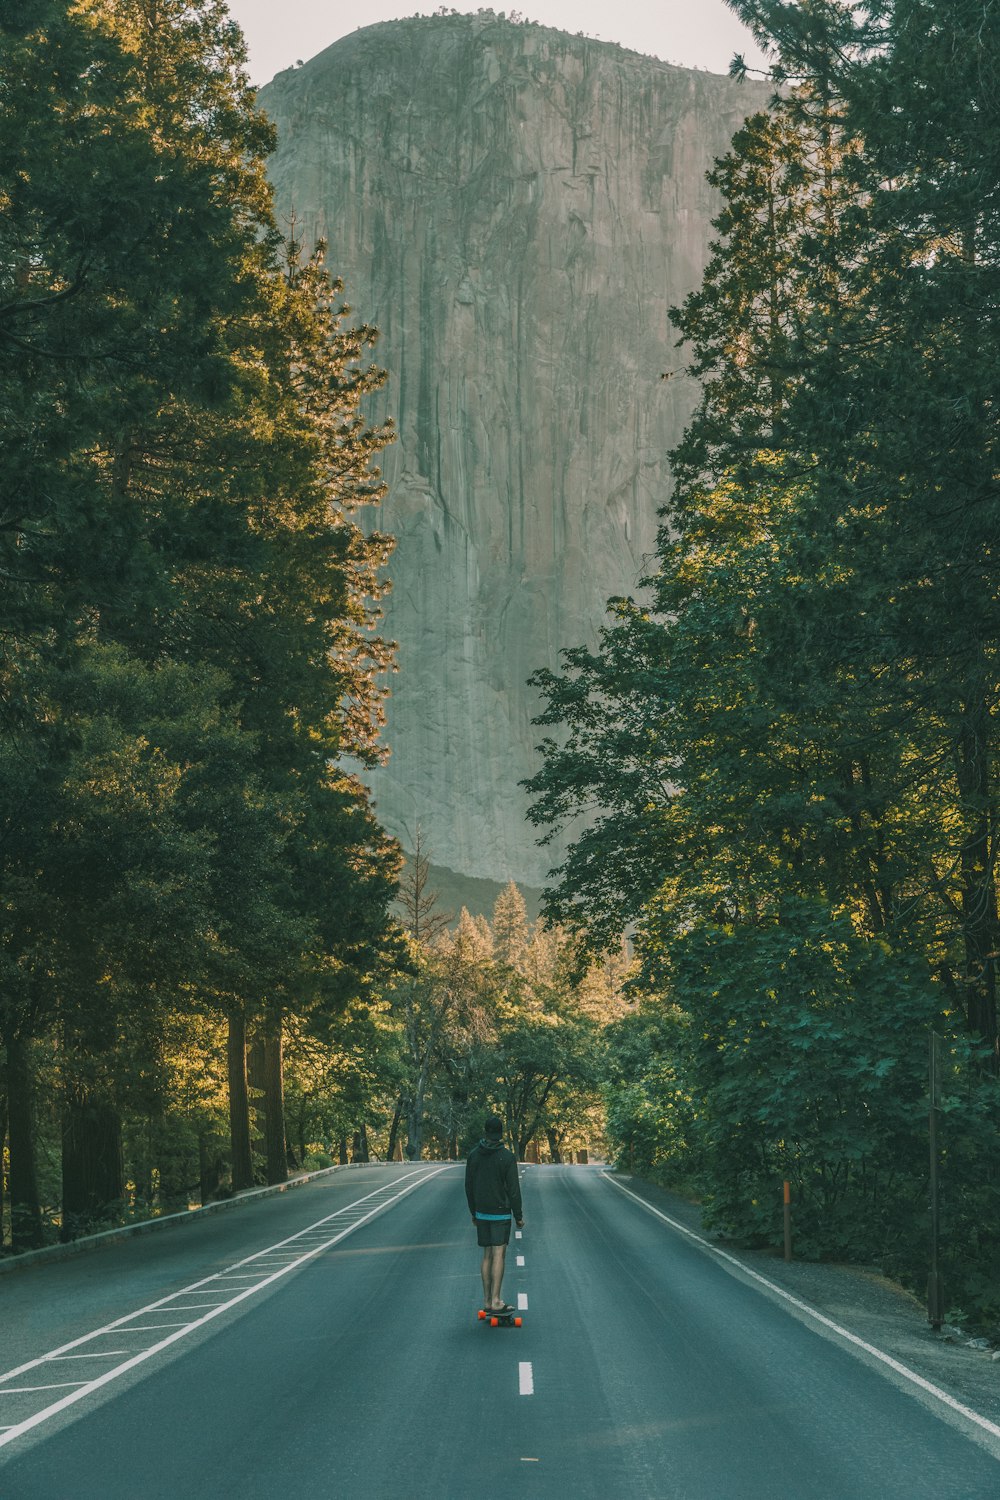 나무 사이의 아스팔트 도로에 서 있는 남자